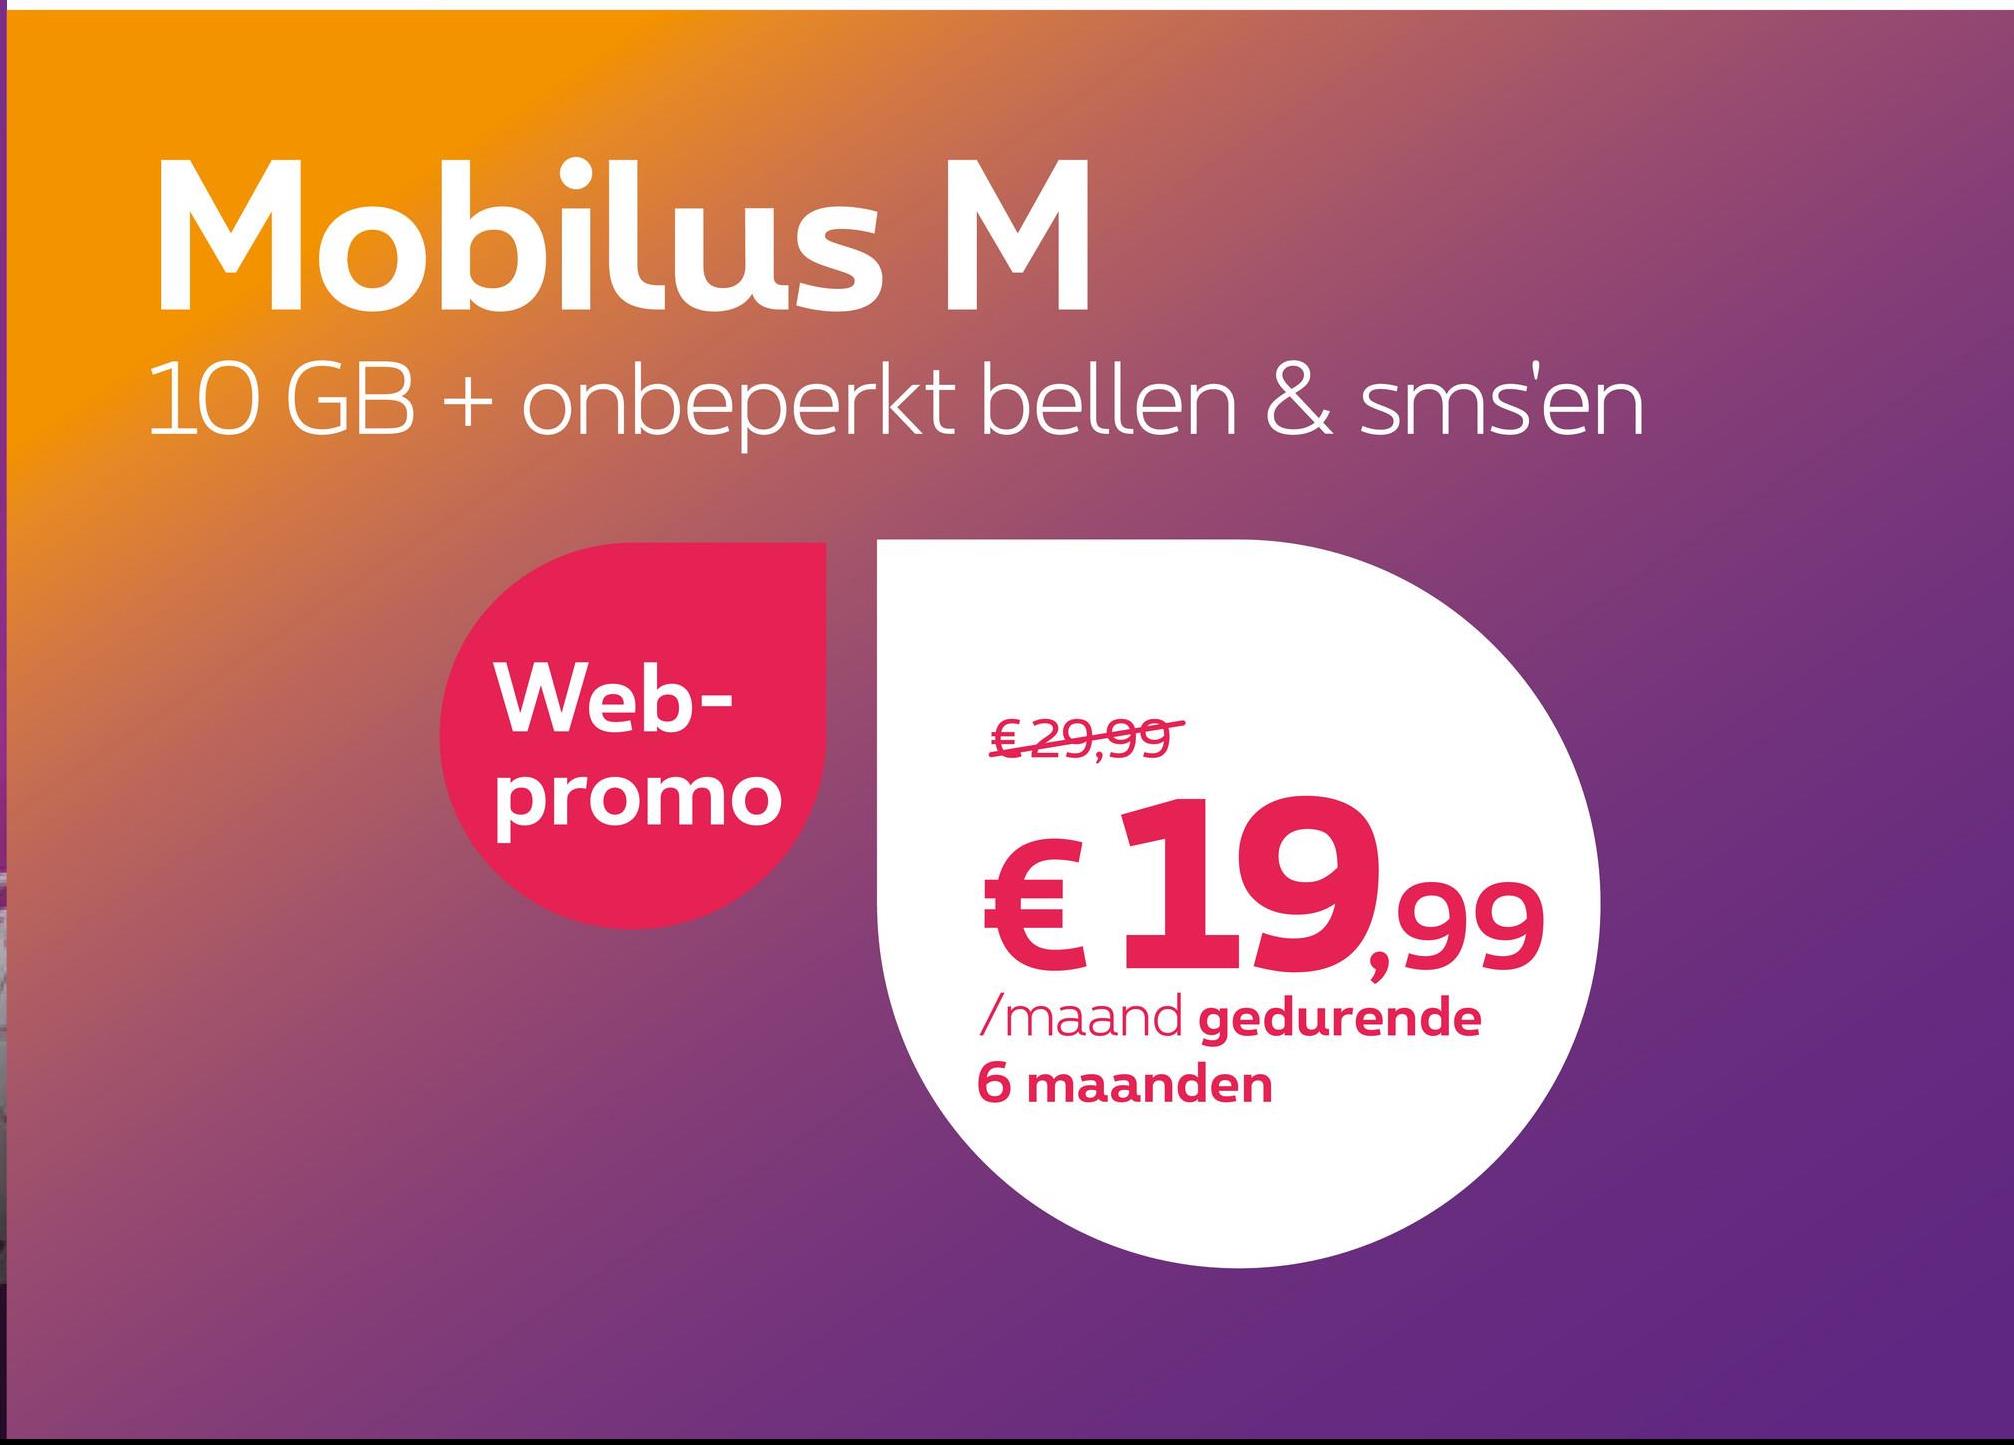 Mobilus M
10 GB + onbeperkt bellen & sms'en
Web-
promo
€ 29,99
€19.99
/maand gedurende
6 maanden